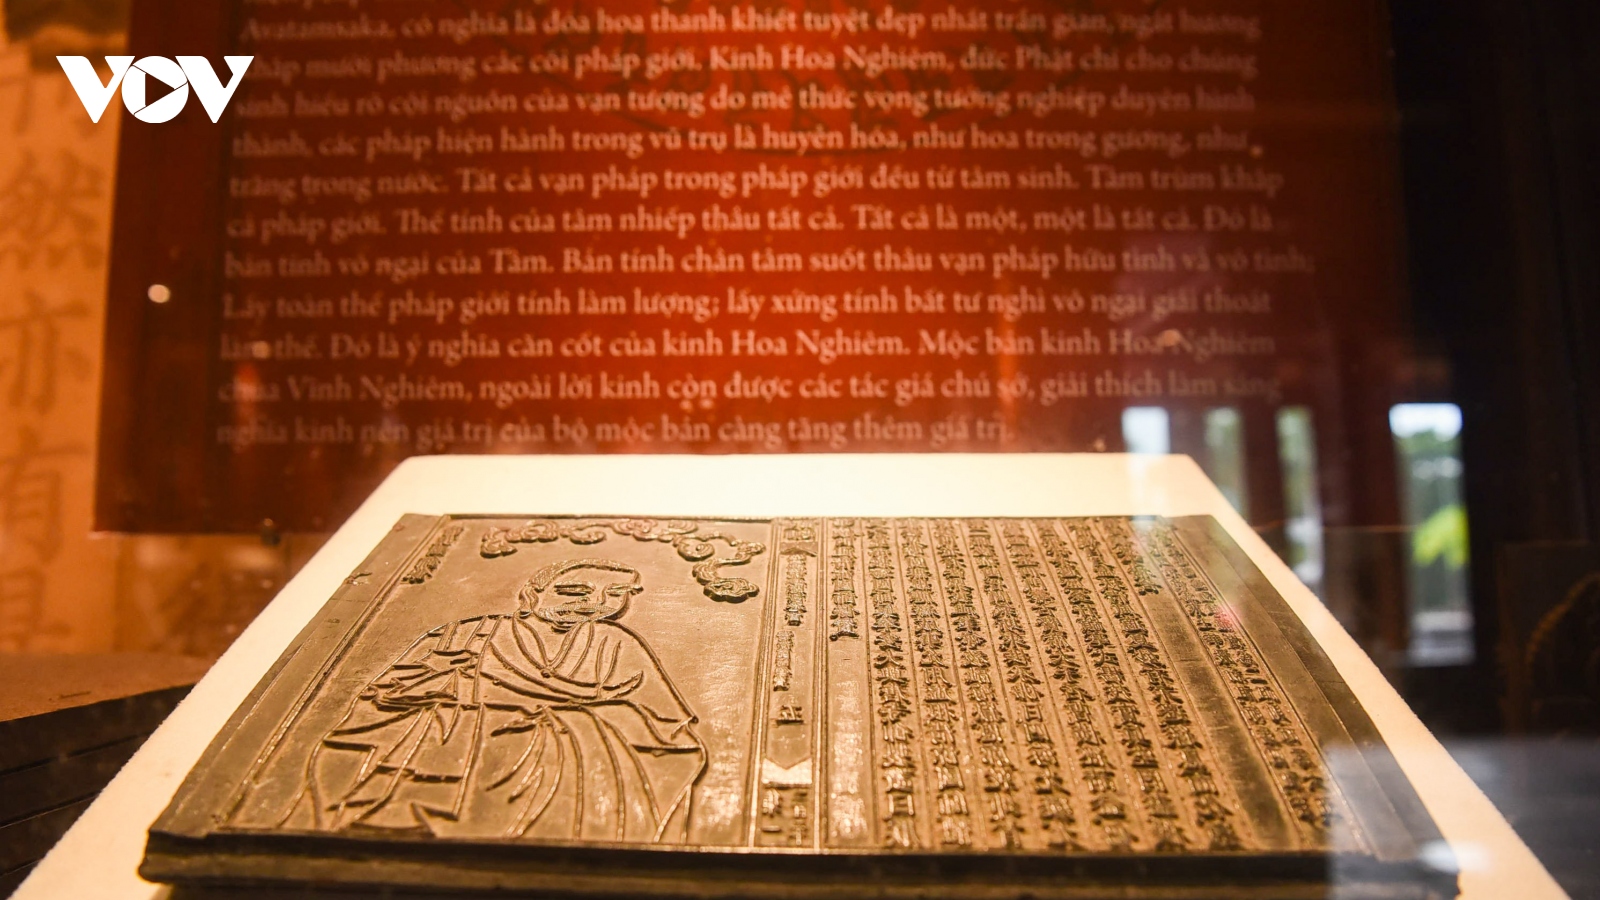 Rước bộ mộc bản của Phật Hoàng lên chùa Thượng Tây Yên Tử ở Bắc Giang